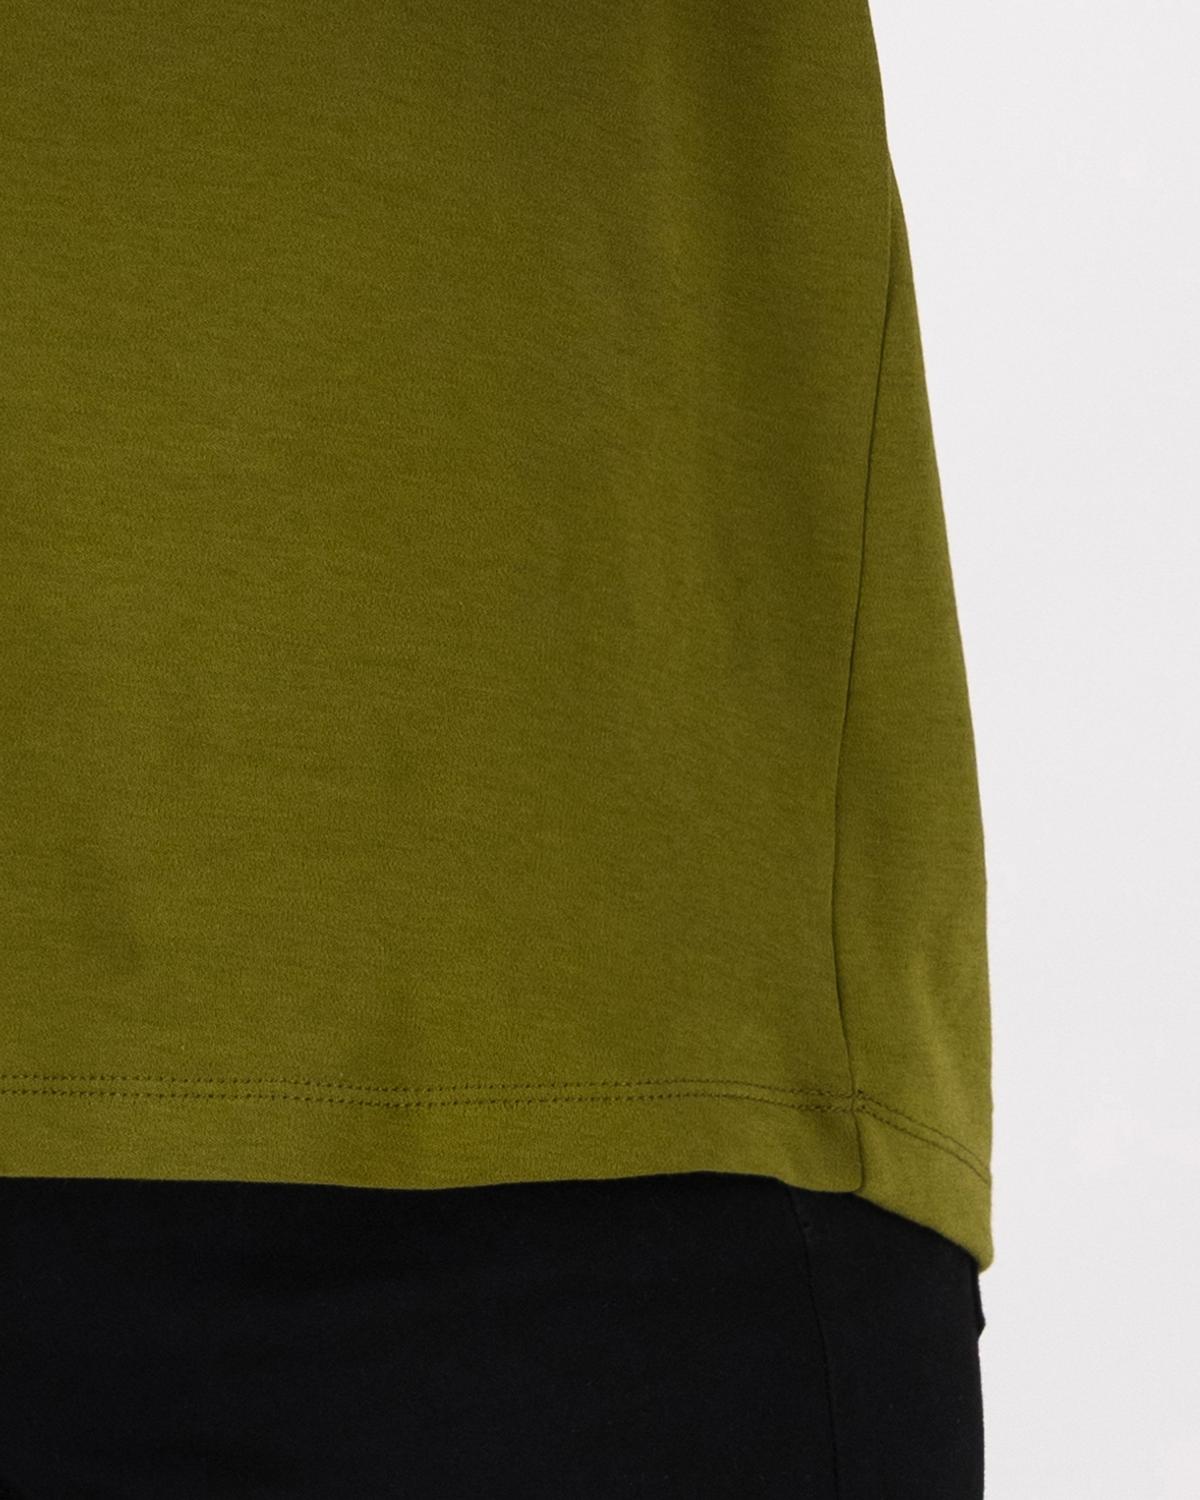 Celine Basic T-Shirt -  Green